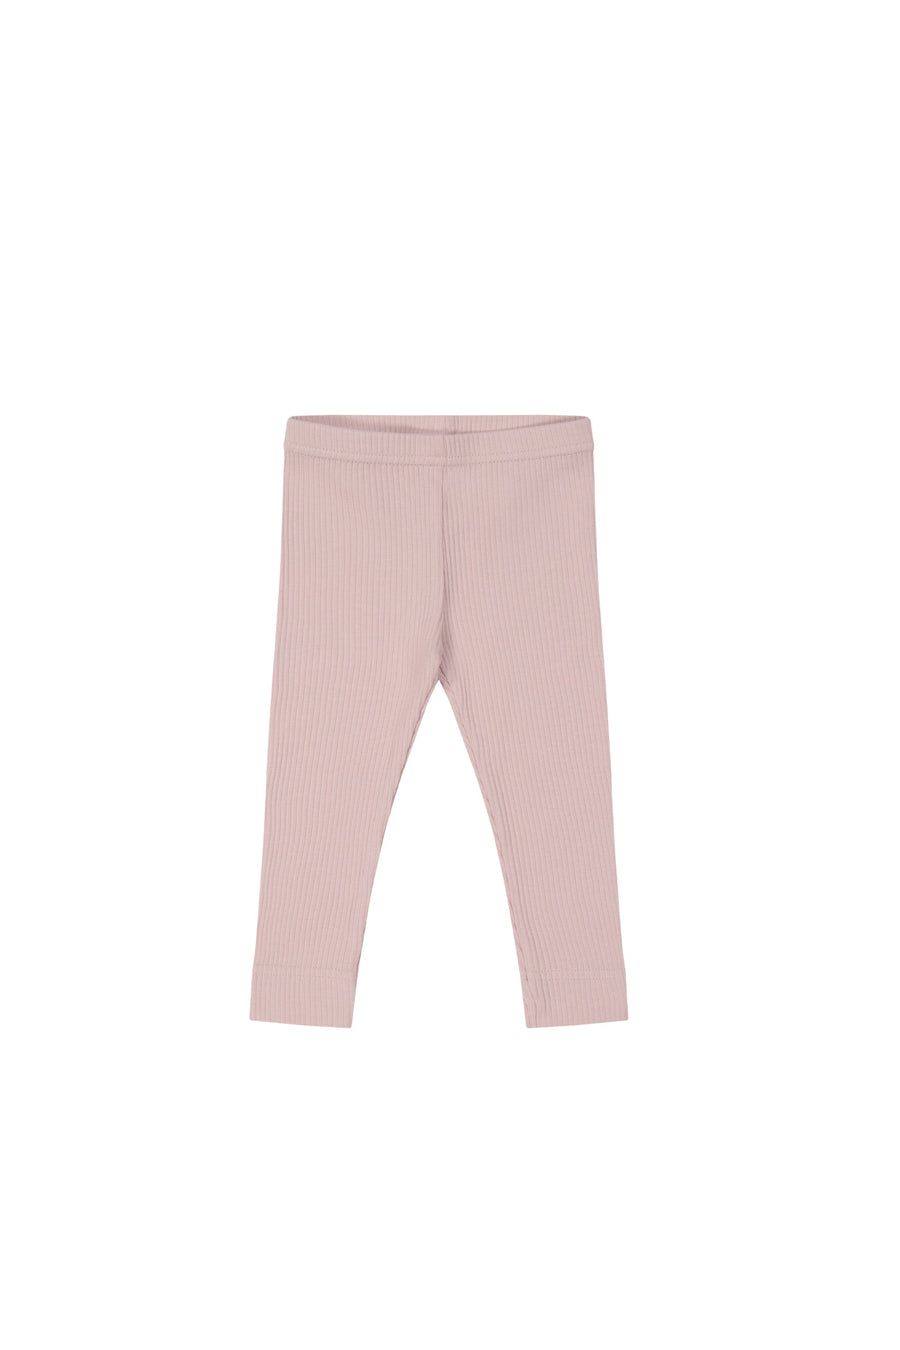 Organic Cotton Modal Elastane Legging - Powder Pink - Girls Leggings at Jamie Kay